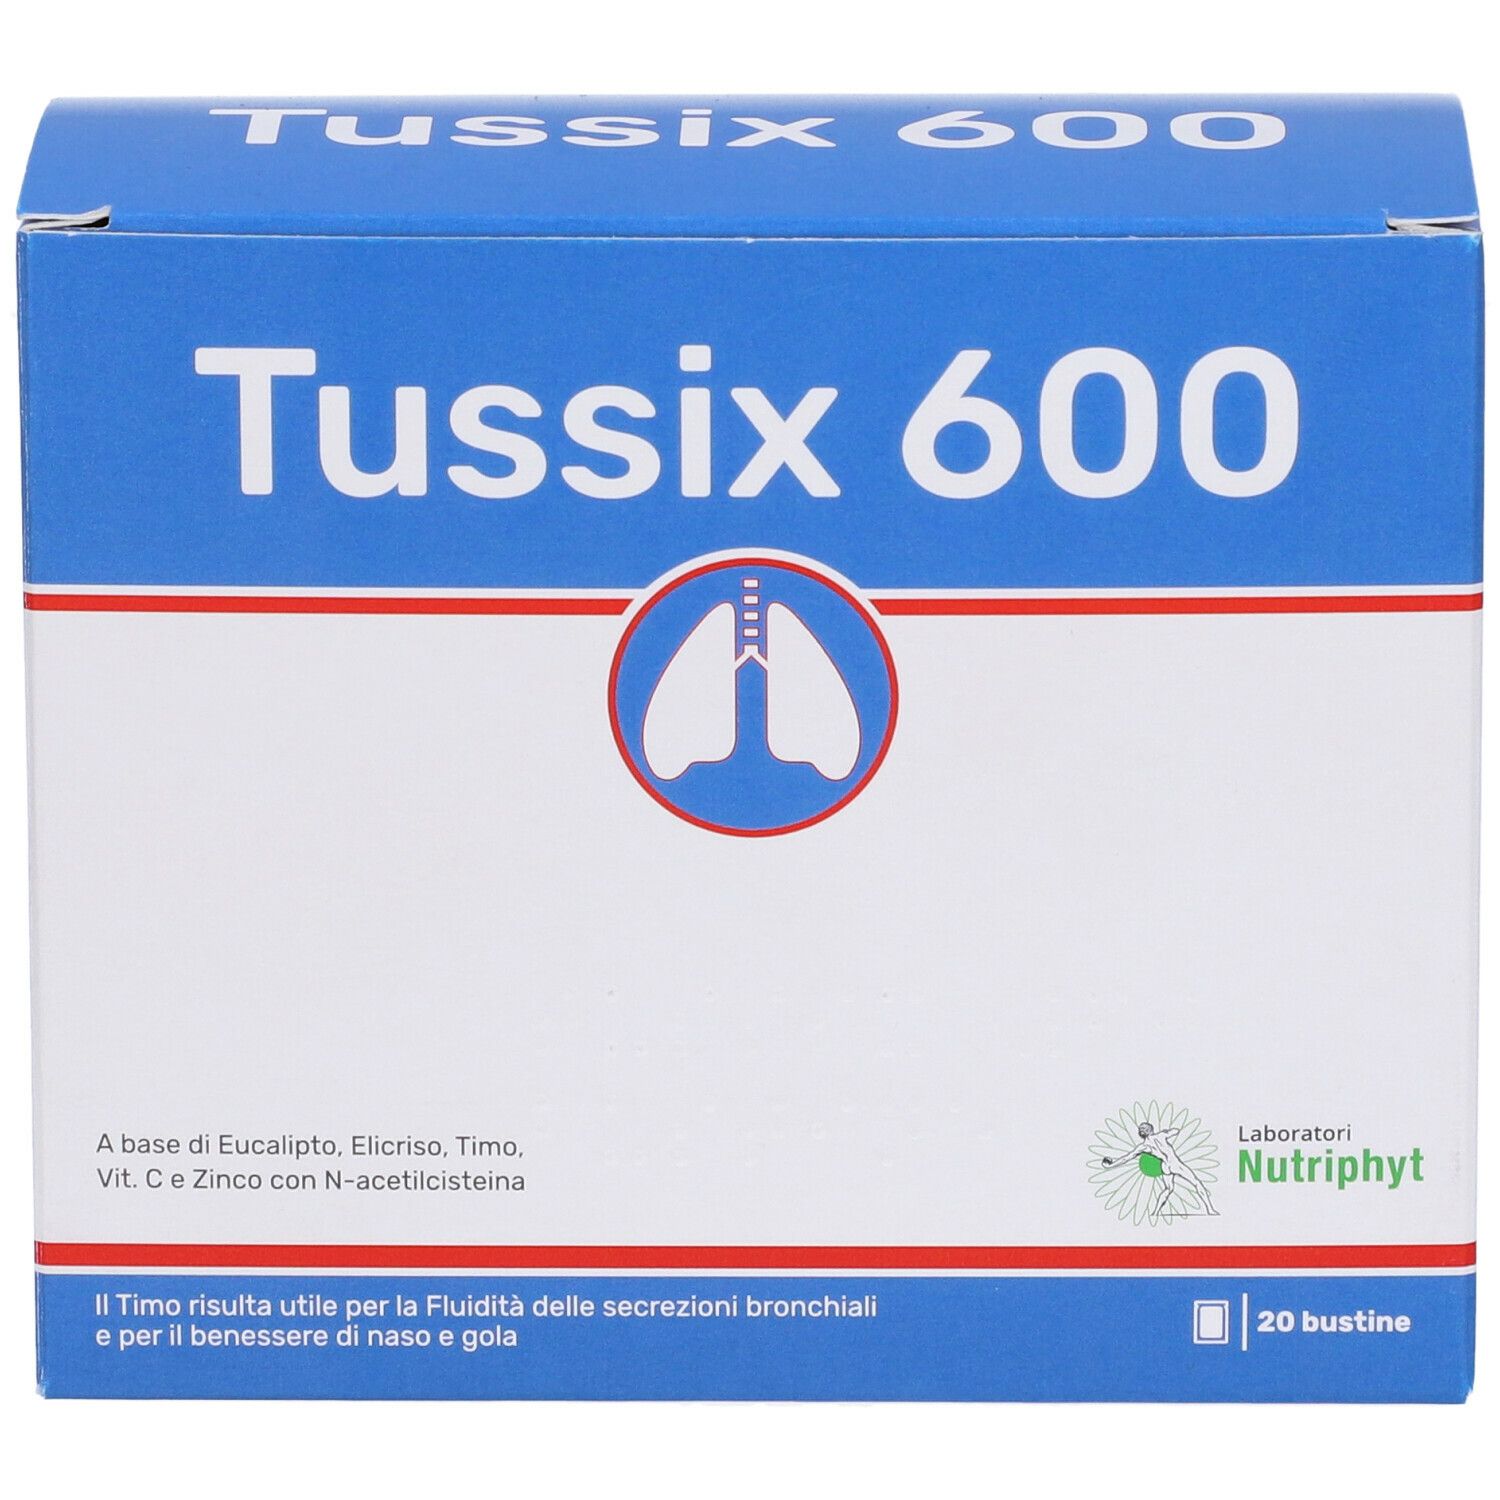 Tussix 600